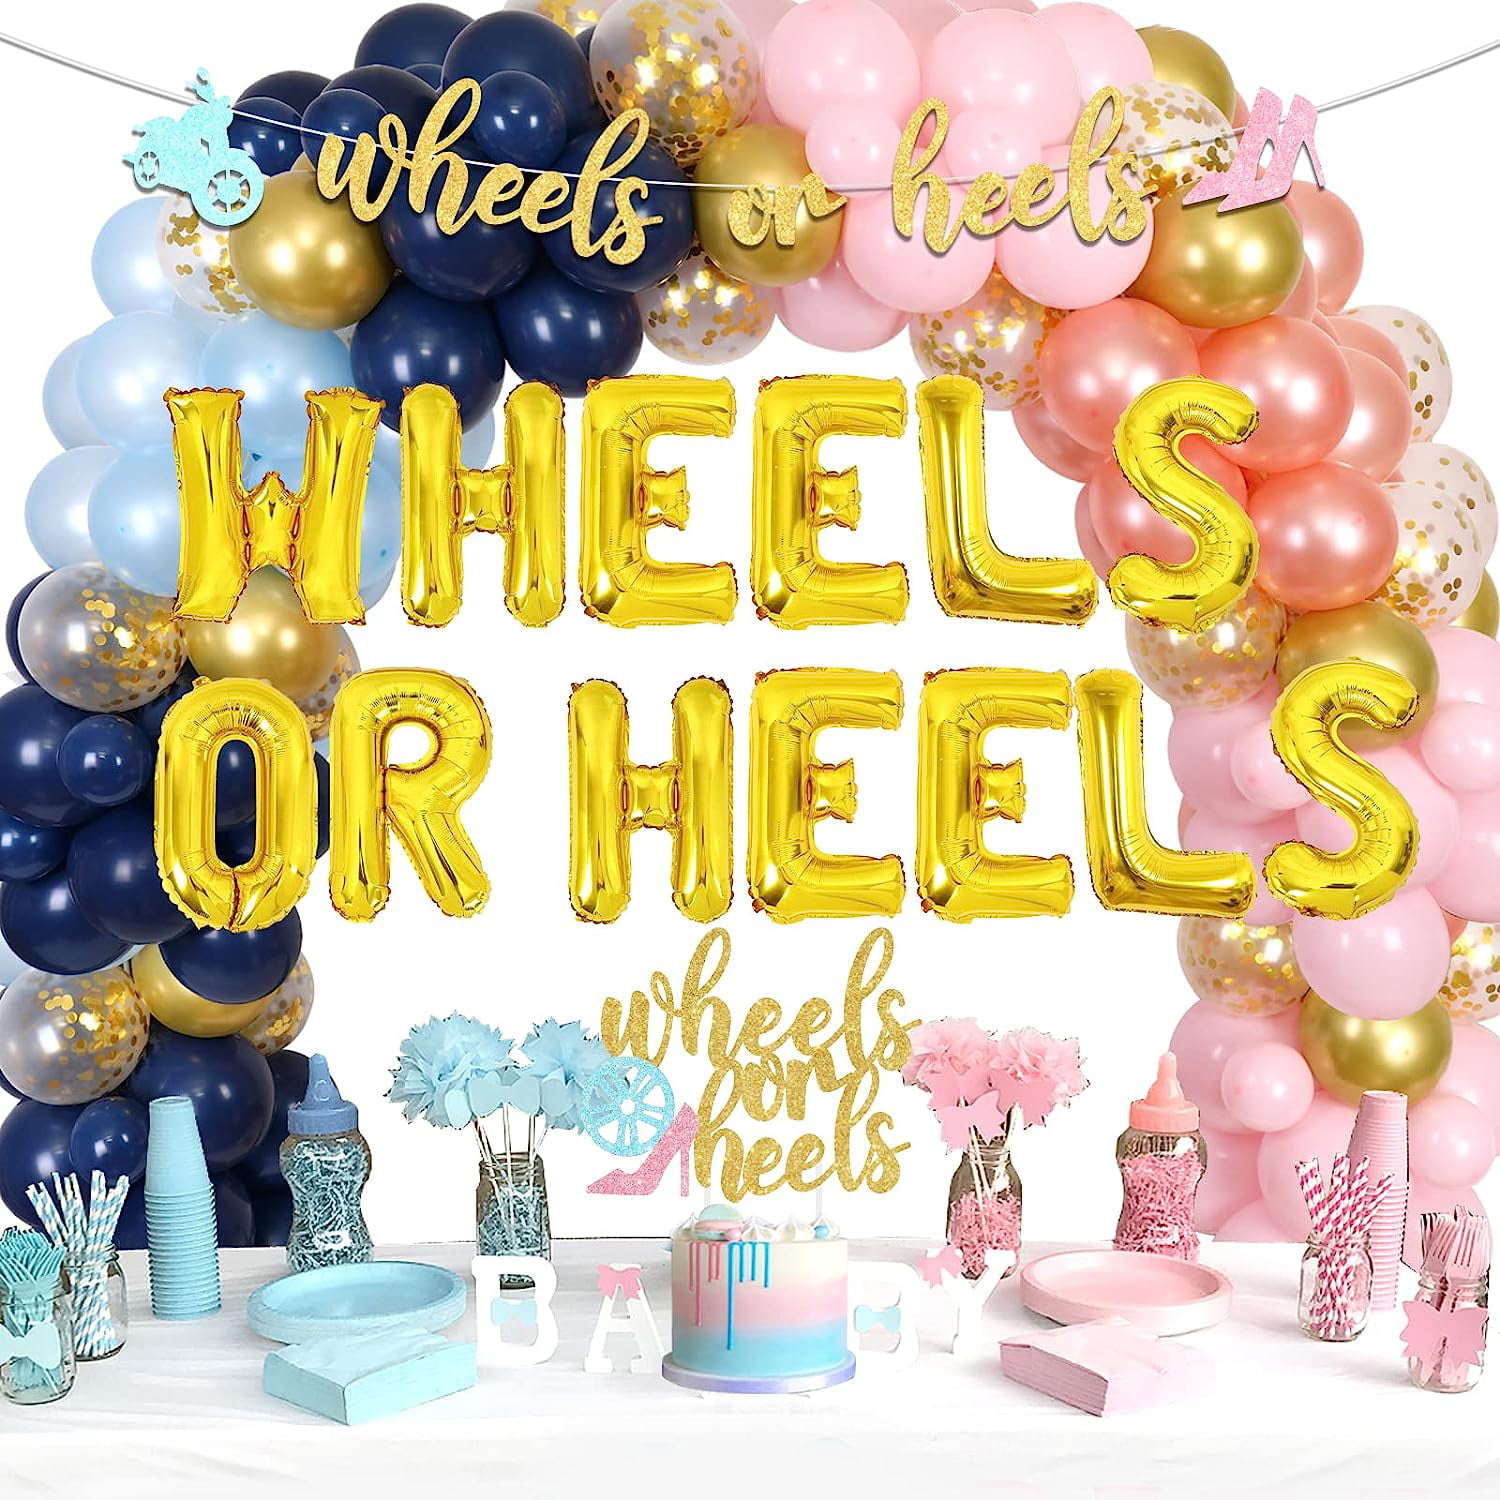 Wheels Or Heels